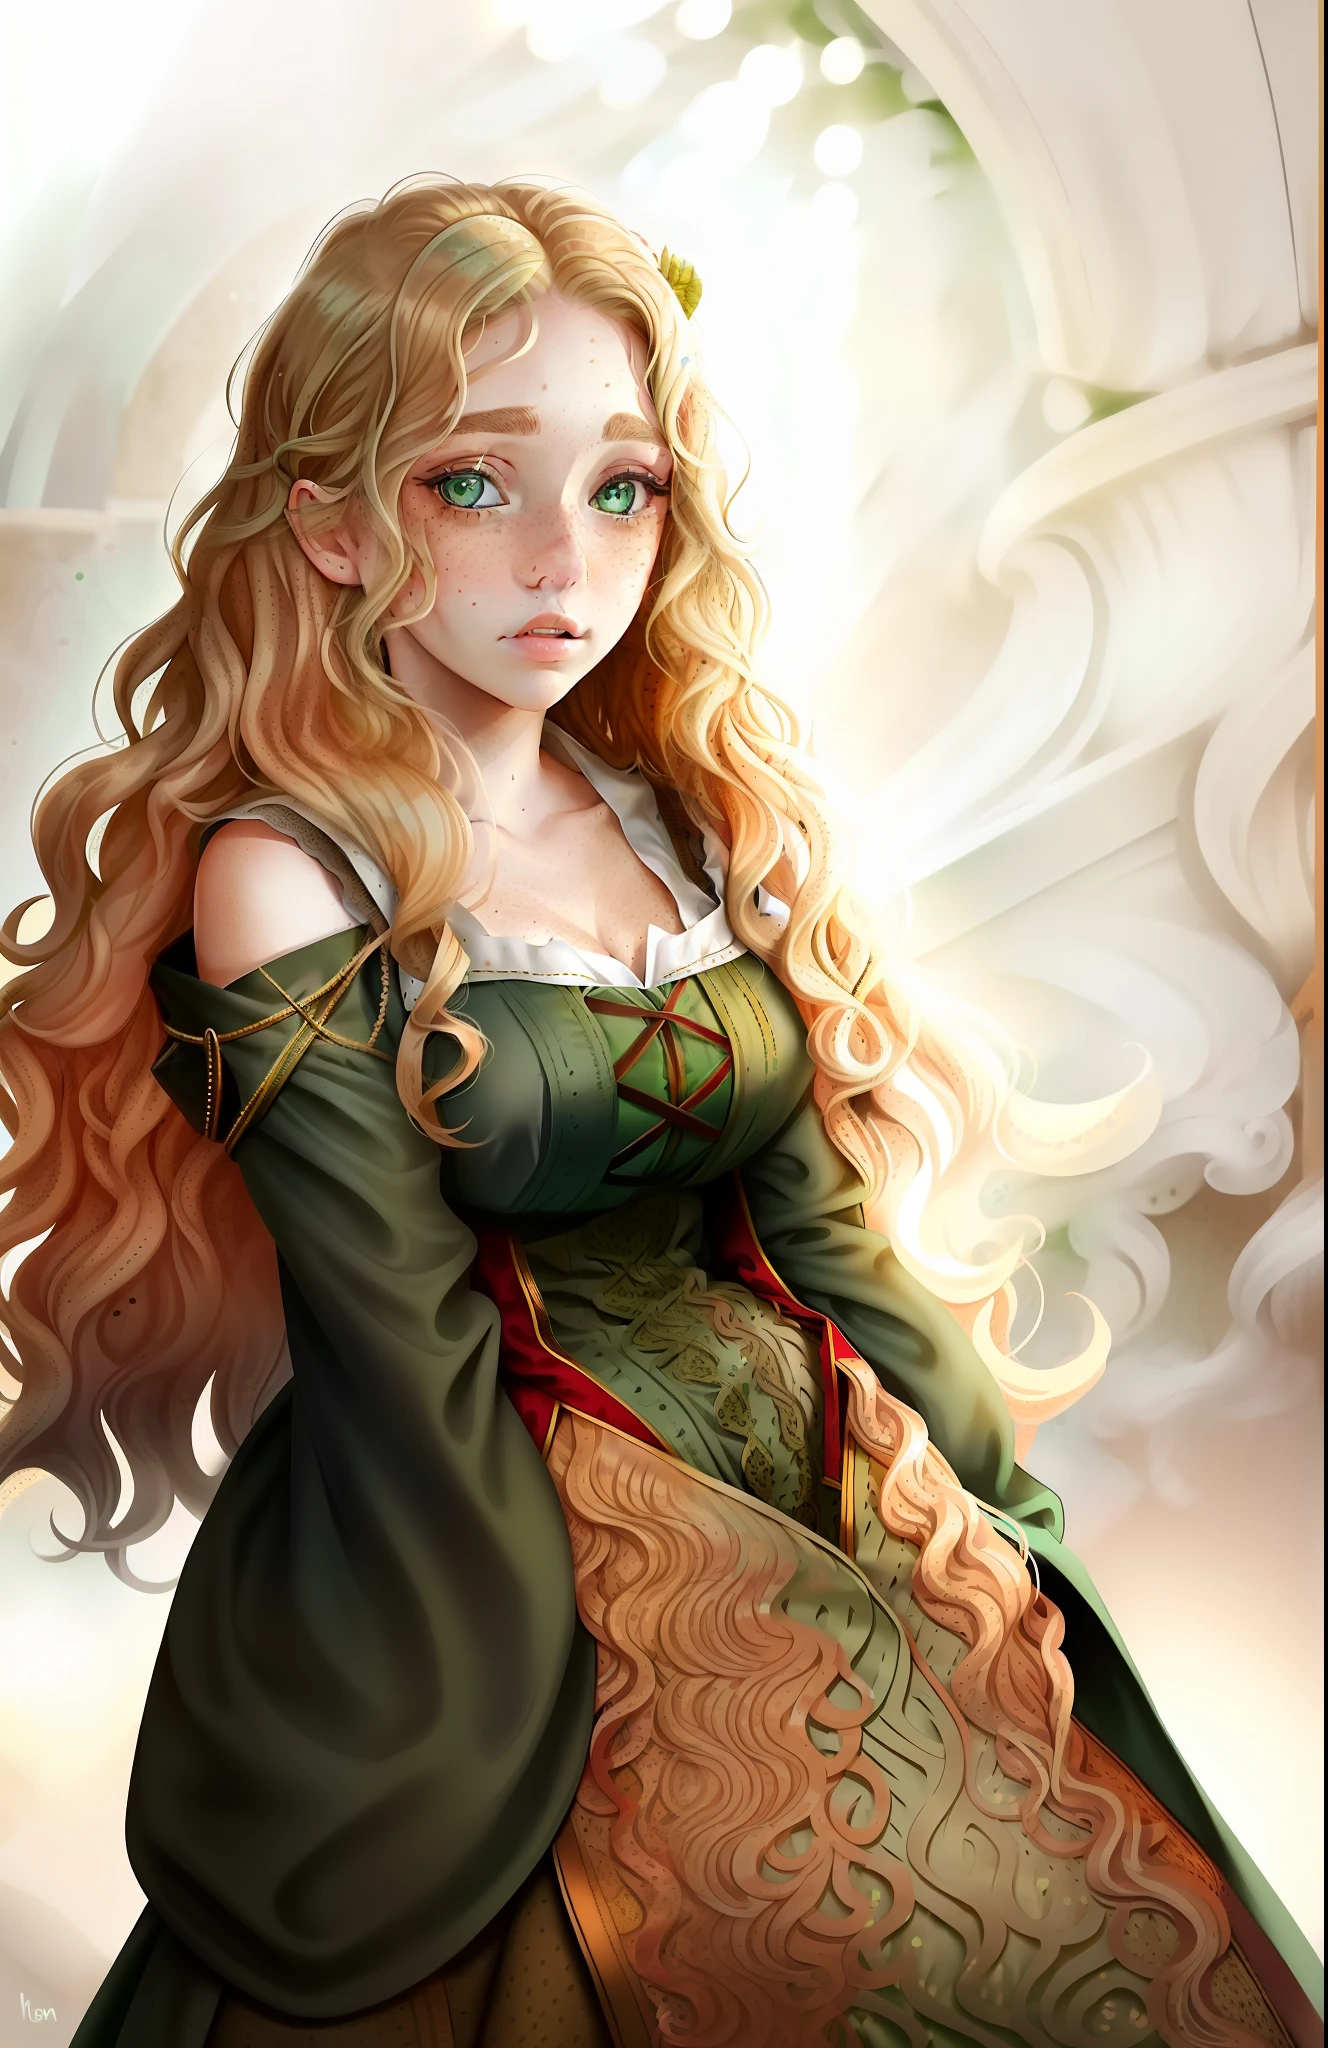 ((mulher)), ((cabelo loiro ondulado)), ((vestido medieval)), (((olhos verdes)), ((sardas no rosto))